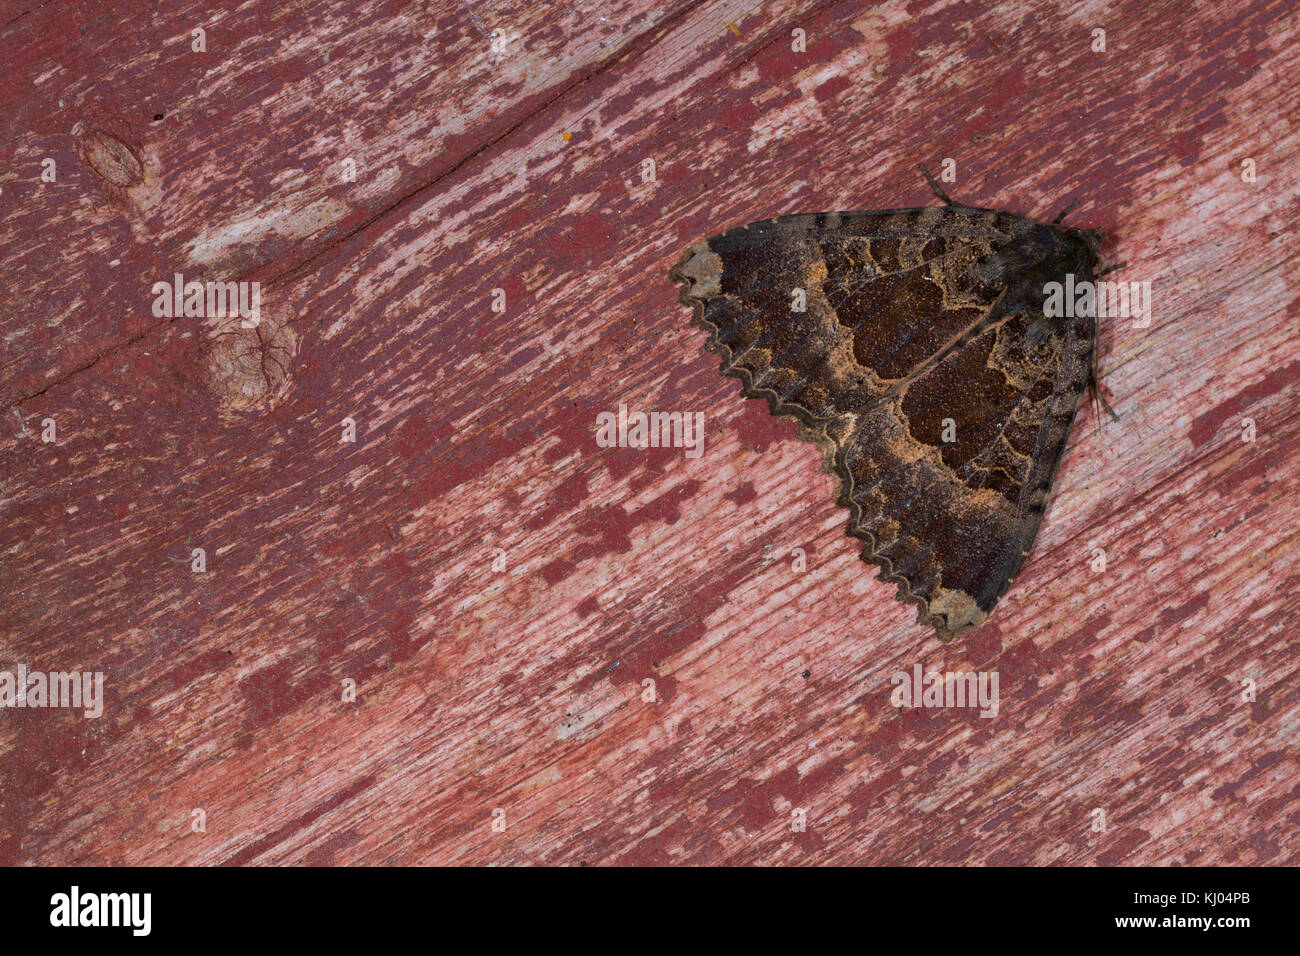 Vieille Dame (Mormo maura) papillon adulte se percher sur de vieux bois peint. Powys, Pays de Galles. Juillet. Banque D'Images